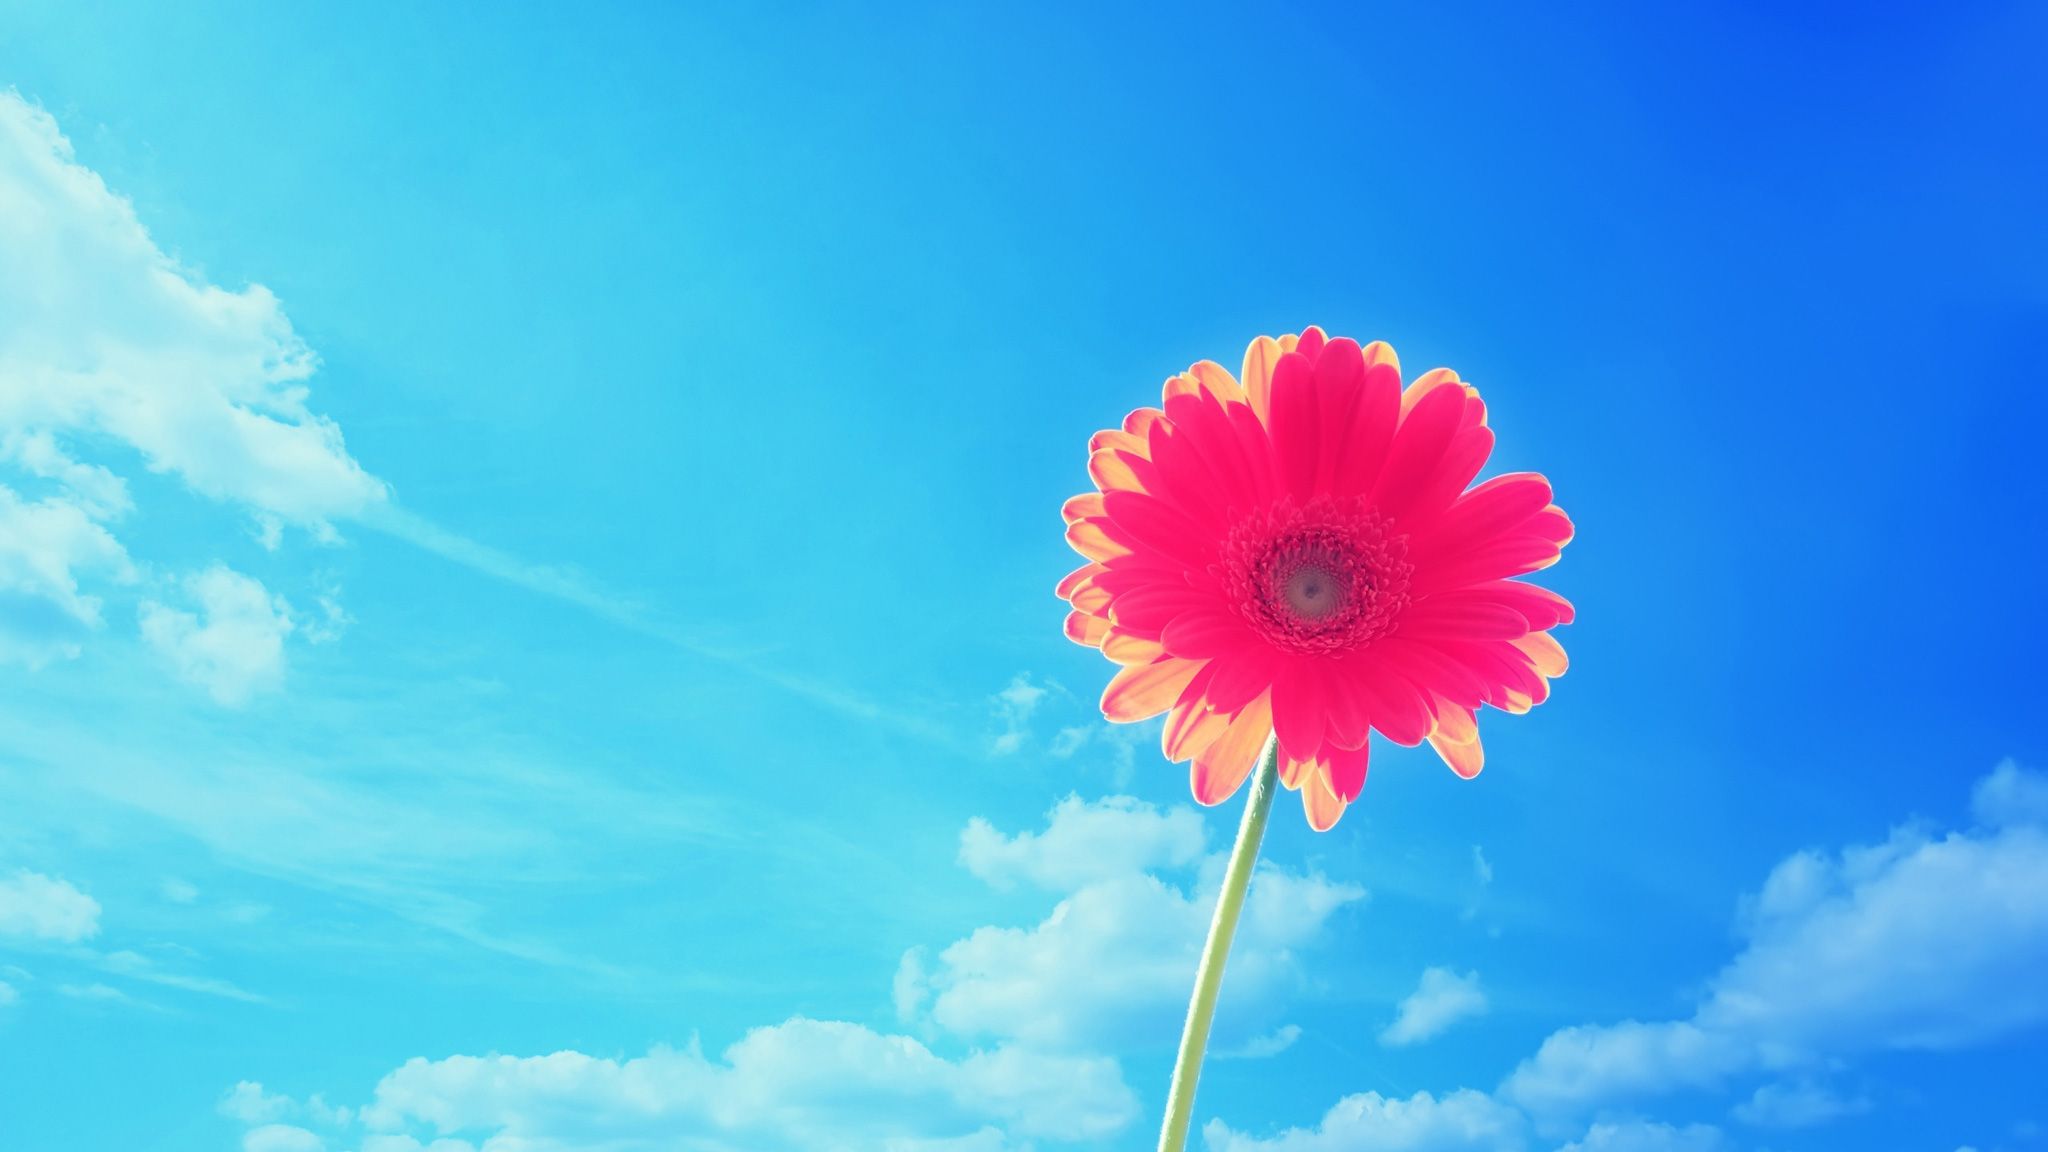 hình nền bông hoa màu hồng giữa bầu trời xanh